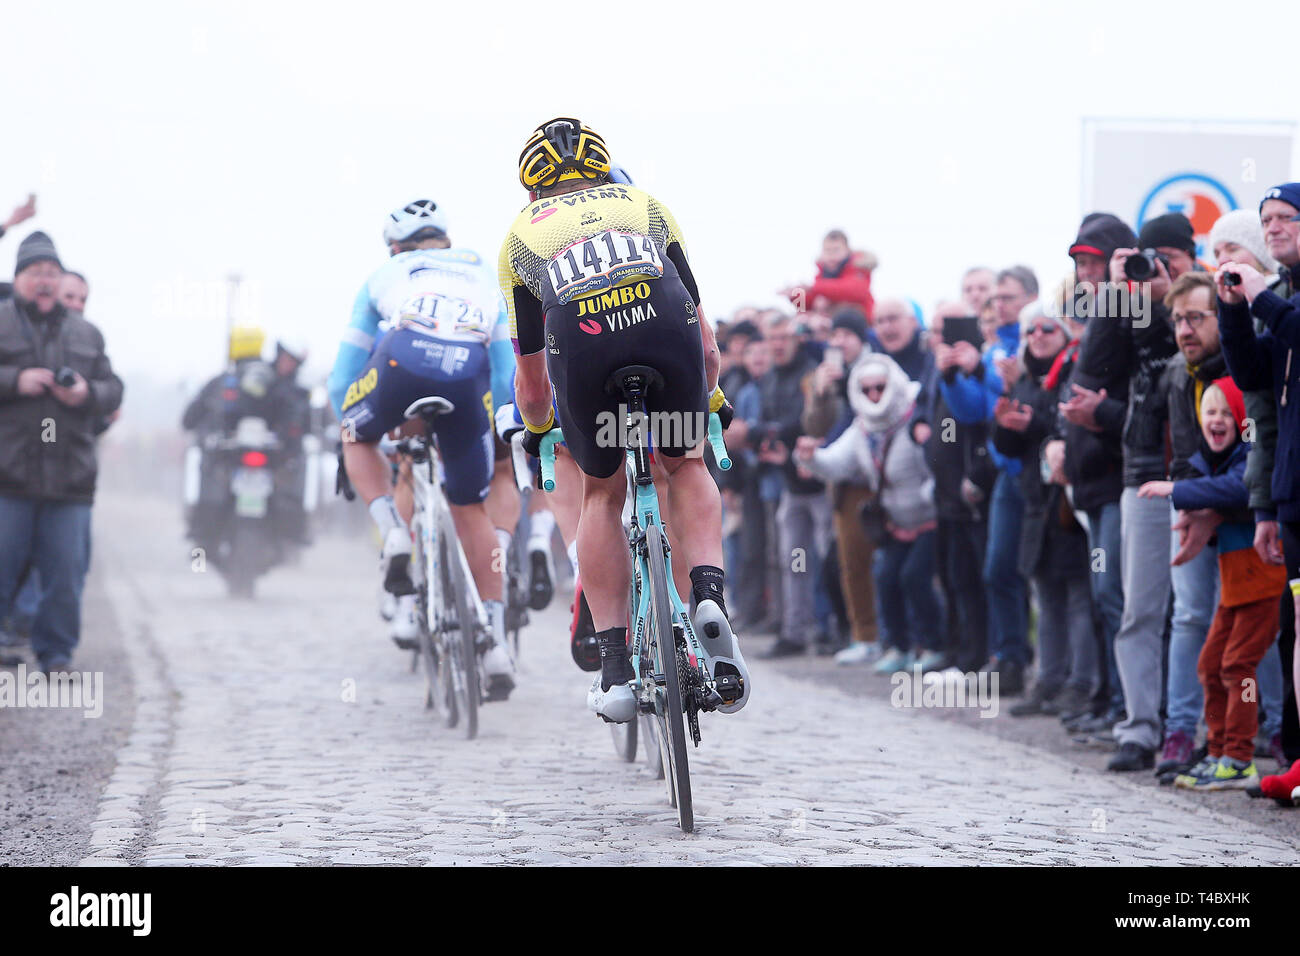 Parijs, 14-04-2019, cycling, Parijs - Roubaix, Mike Teunissen in the pursuit Stock Photo